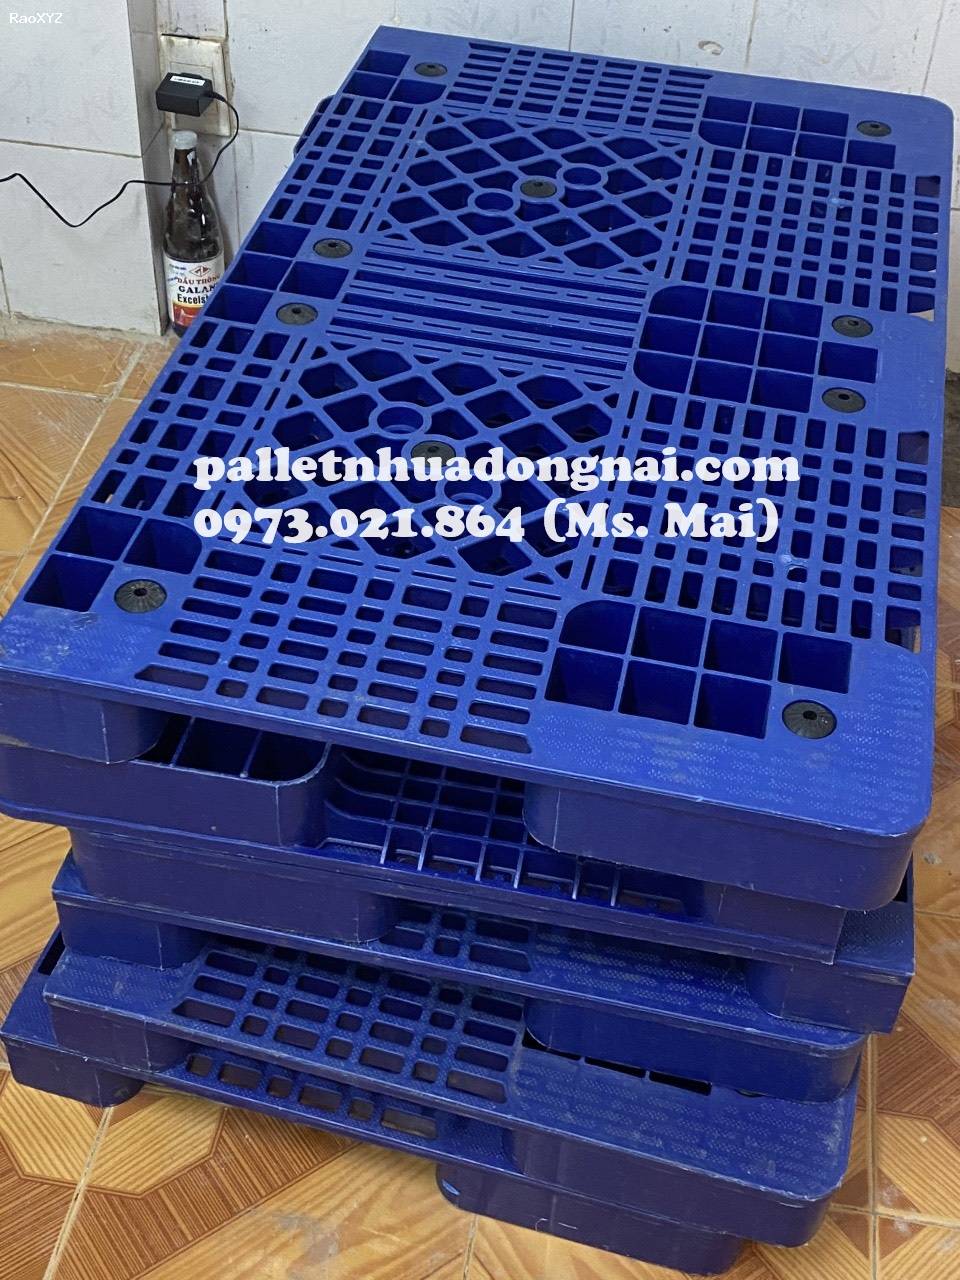 Phân phối pallet nhựa giá rẻ tại Bình Dương, liên hệ 0973021864 (24/7)